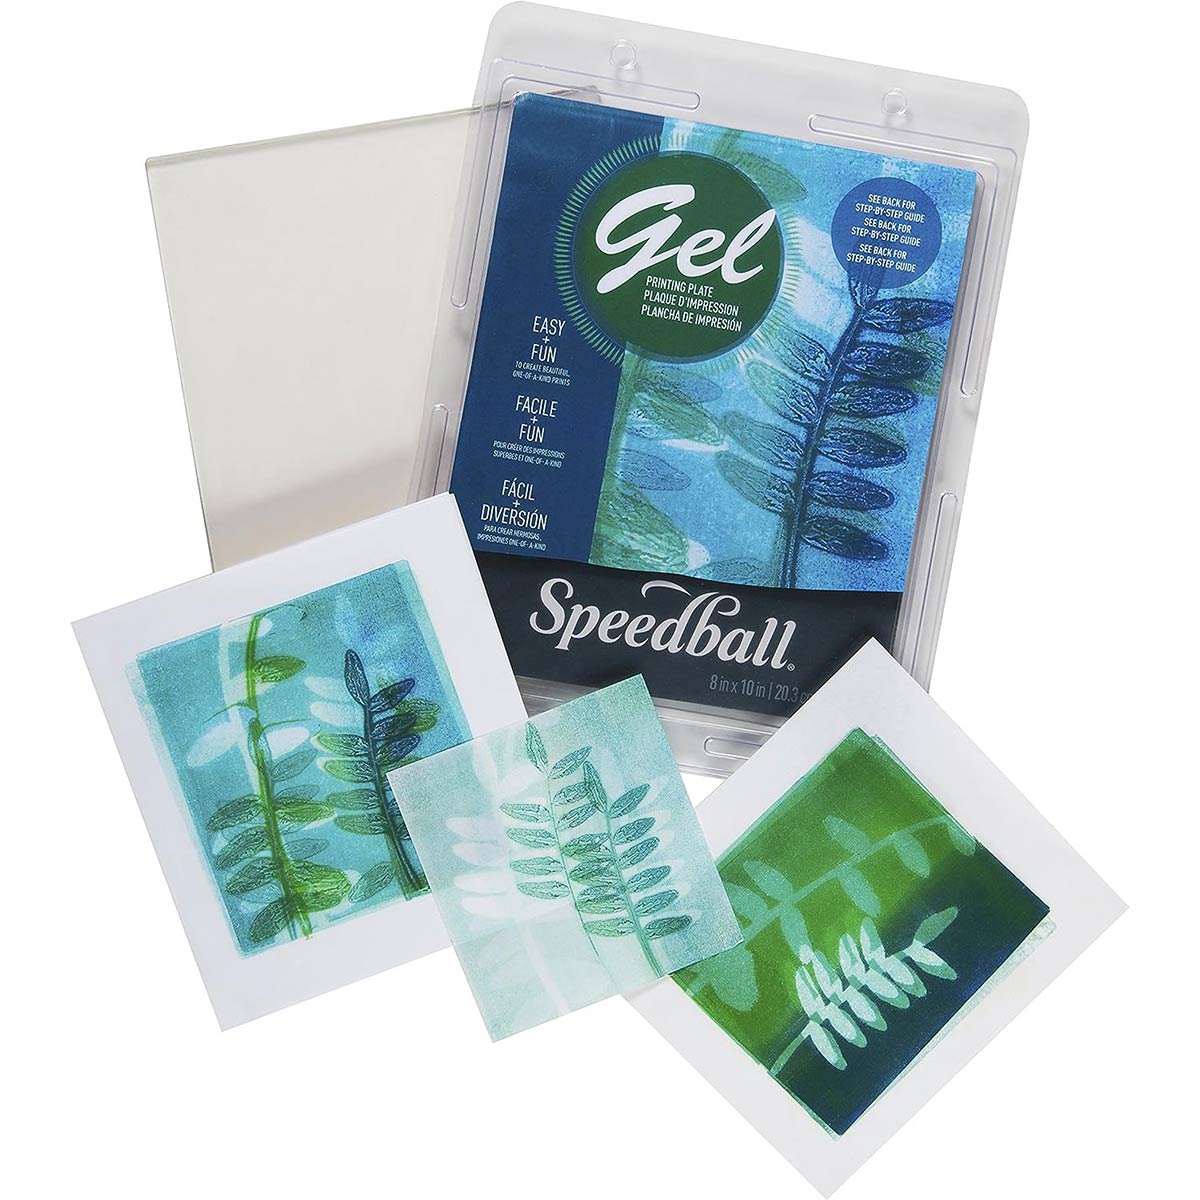 Speedball - piastra di stampa in gel 8 x 10 pollici - 20 x 25 cm